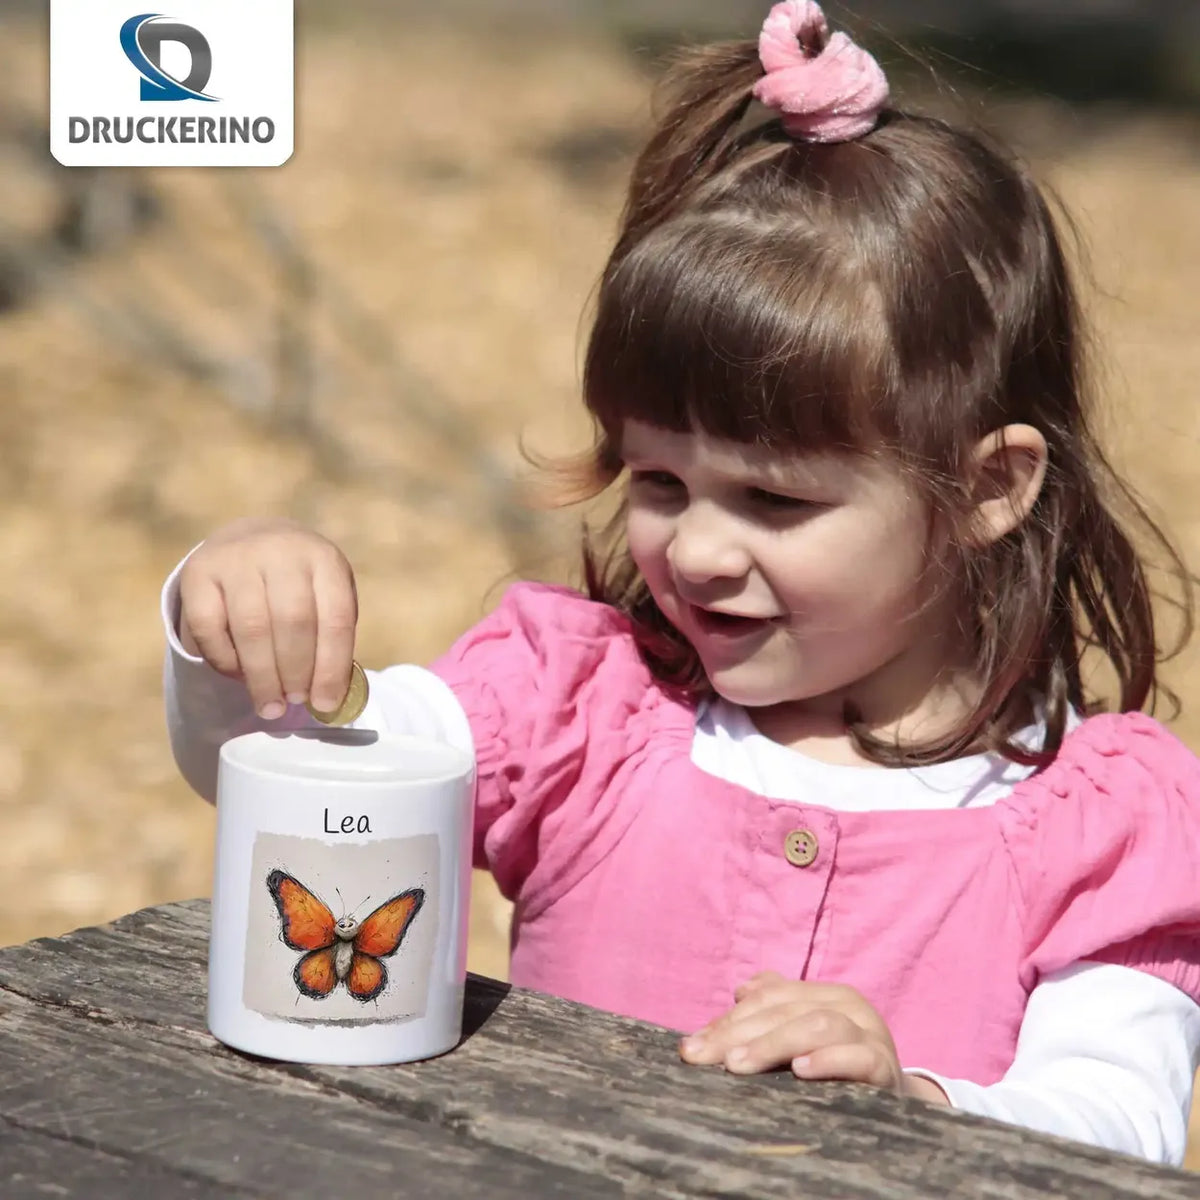 Schmetterlingstraum Spardose für Kinder mit Namen personalisiert Spardose Druckerino   